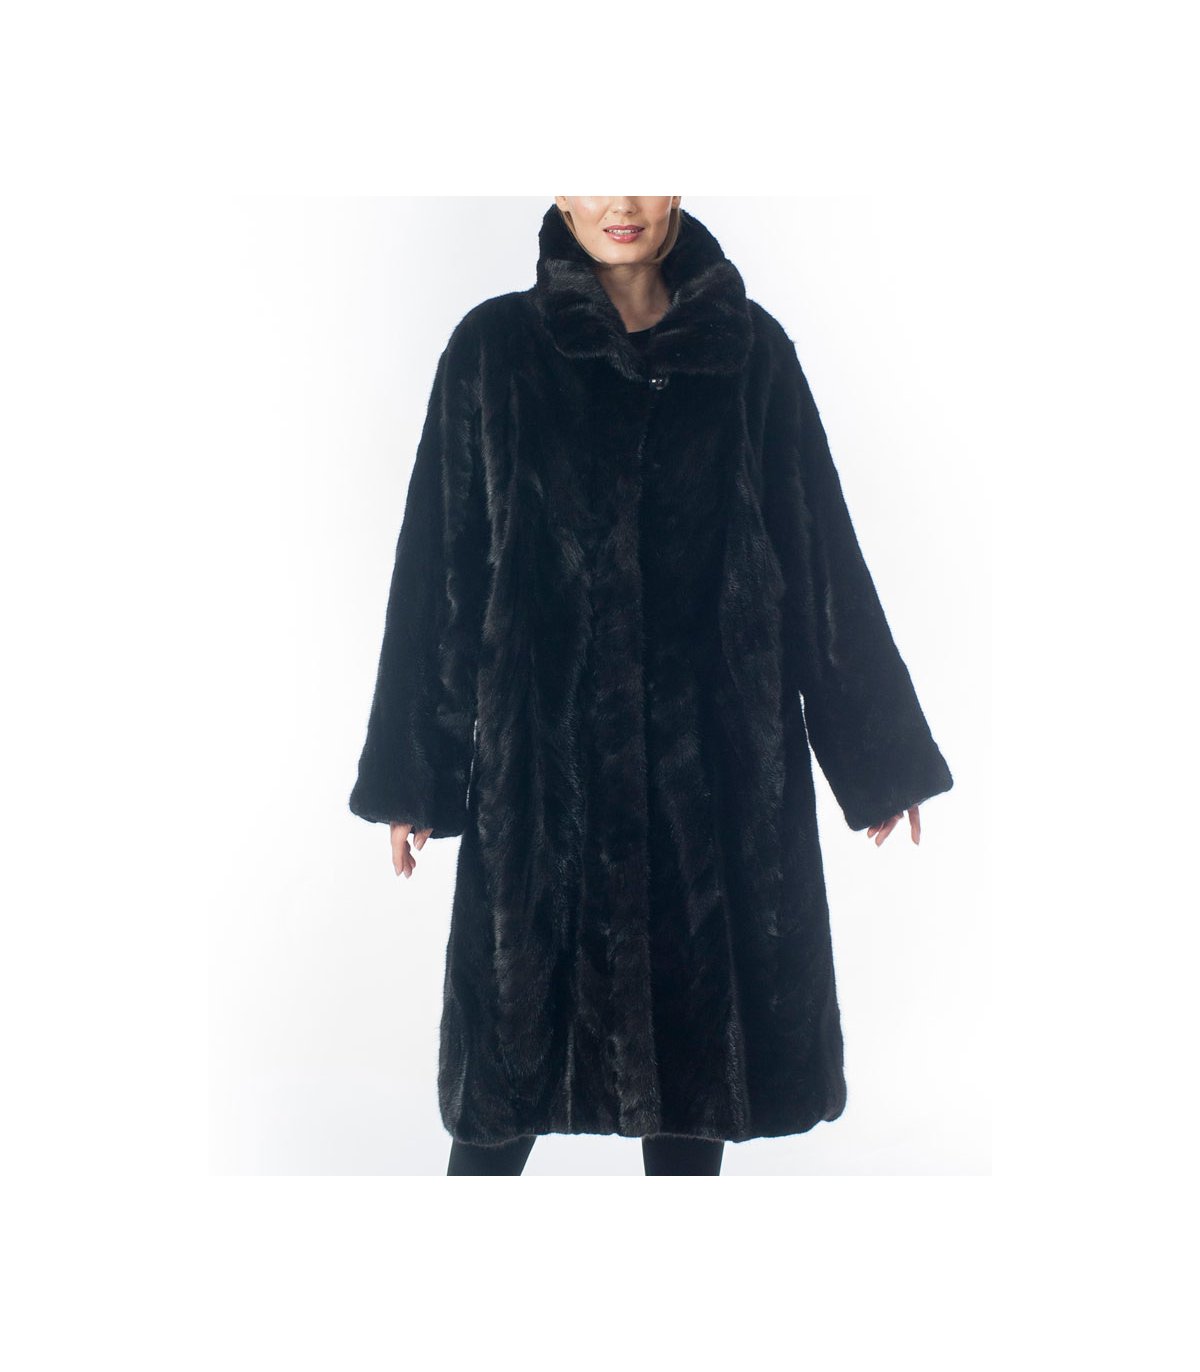 Shop for Black Mink Fur Coat at Fursource